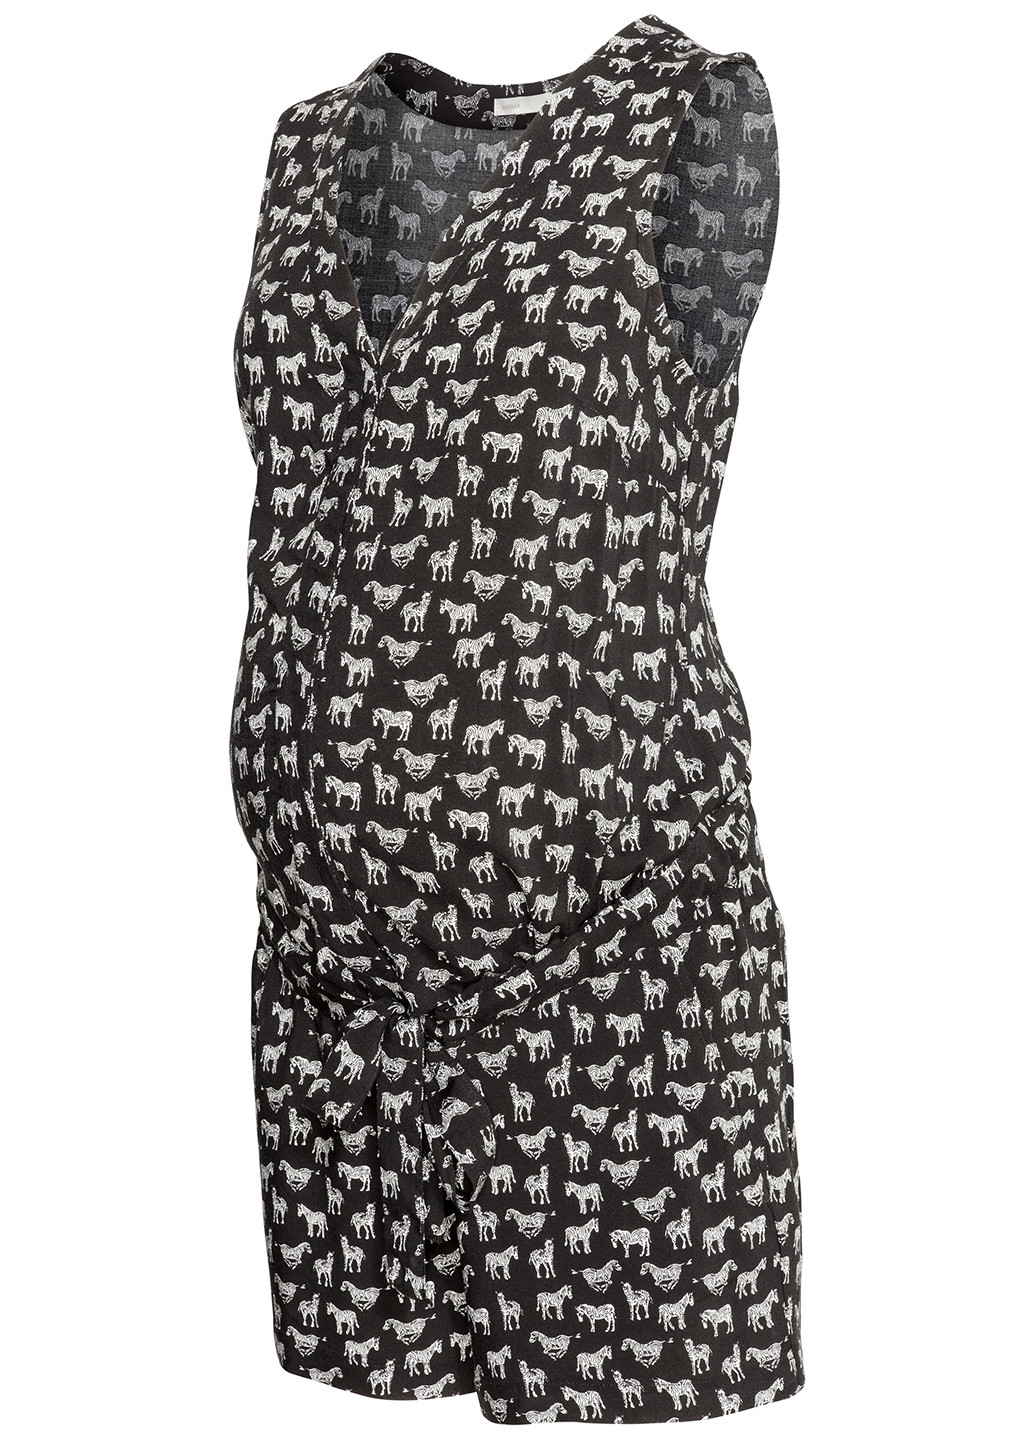 Комбинезон для беременных H&M комбинезон-шорты рисунок чёрный кэжуал